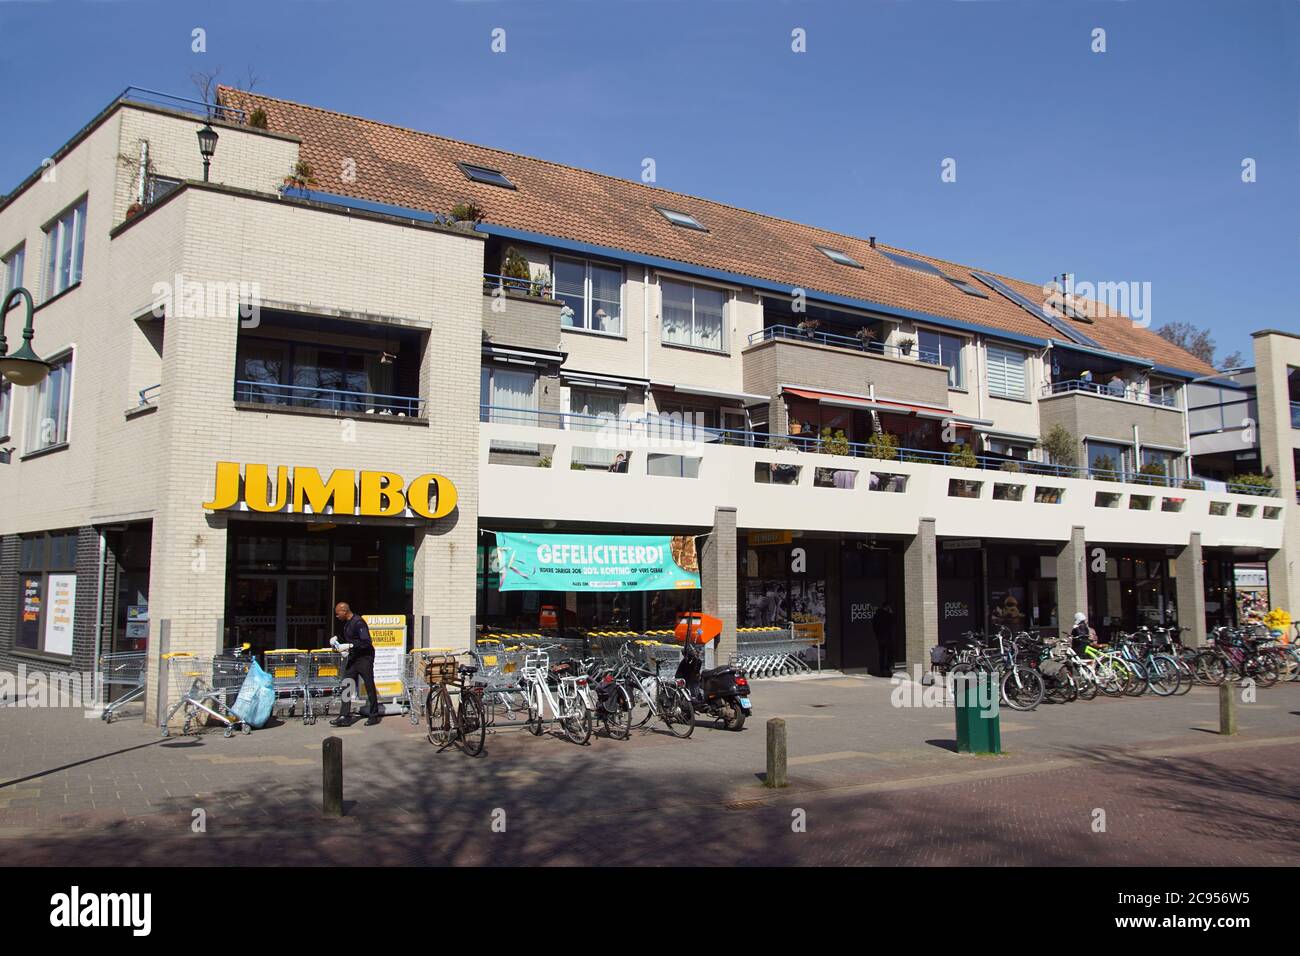 Dutch supermarket Jumbo in Schoorl in North Holland. Above the